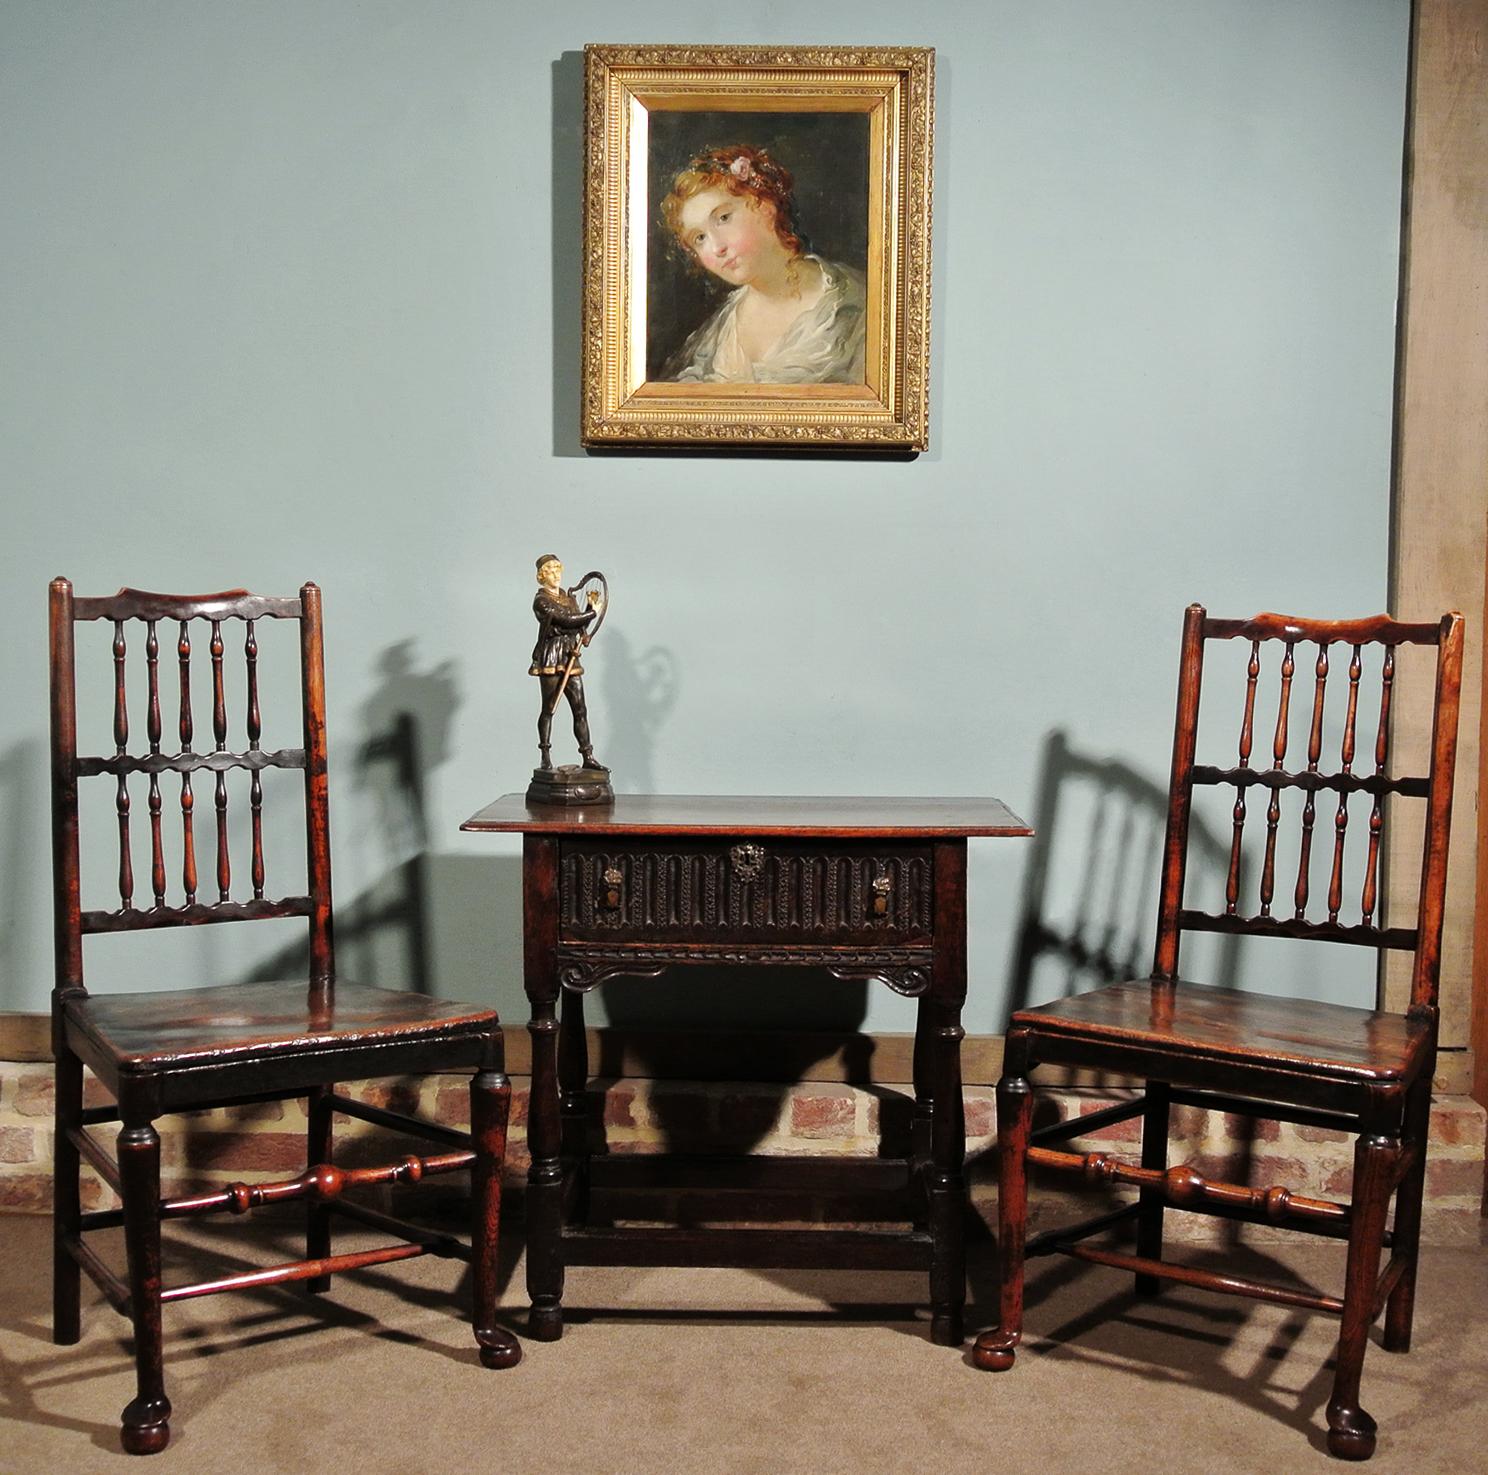 Pair of 18th Century Elm Spindle Back Chairs (18. Jahrhundert und früher)